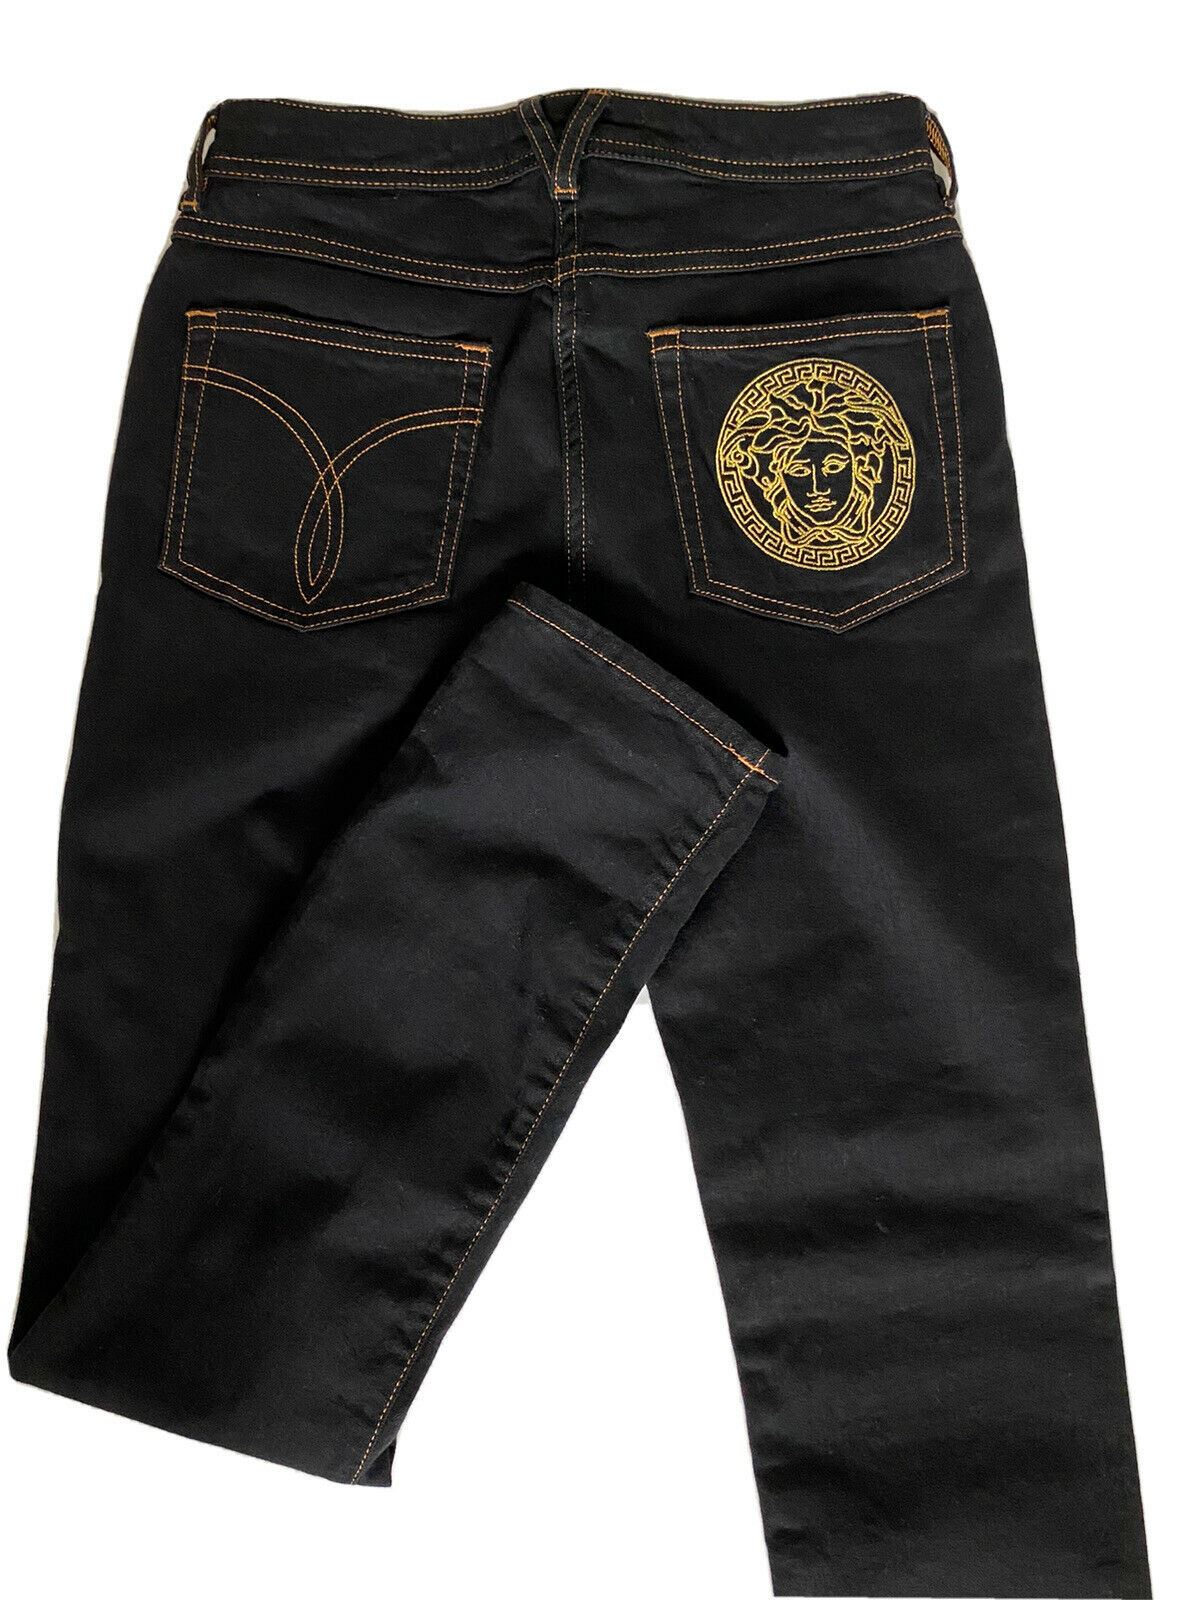 Женские черные джинсы Versace NWT, 500 долларов США, размер 25, США, A89556S, сделано в Италии